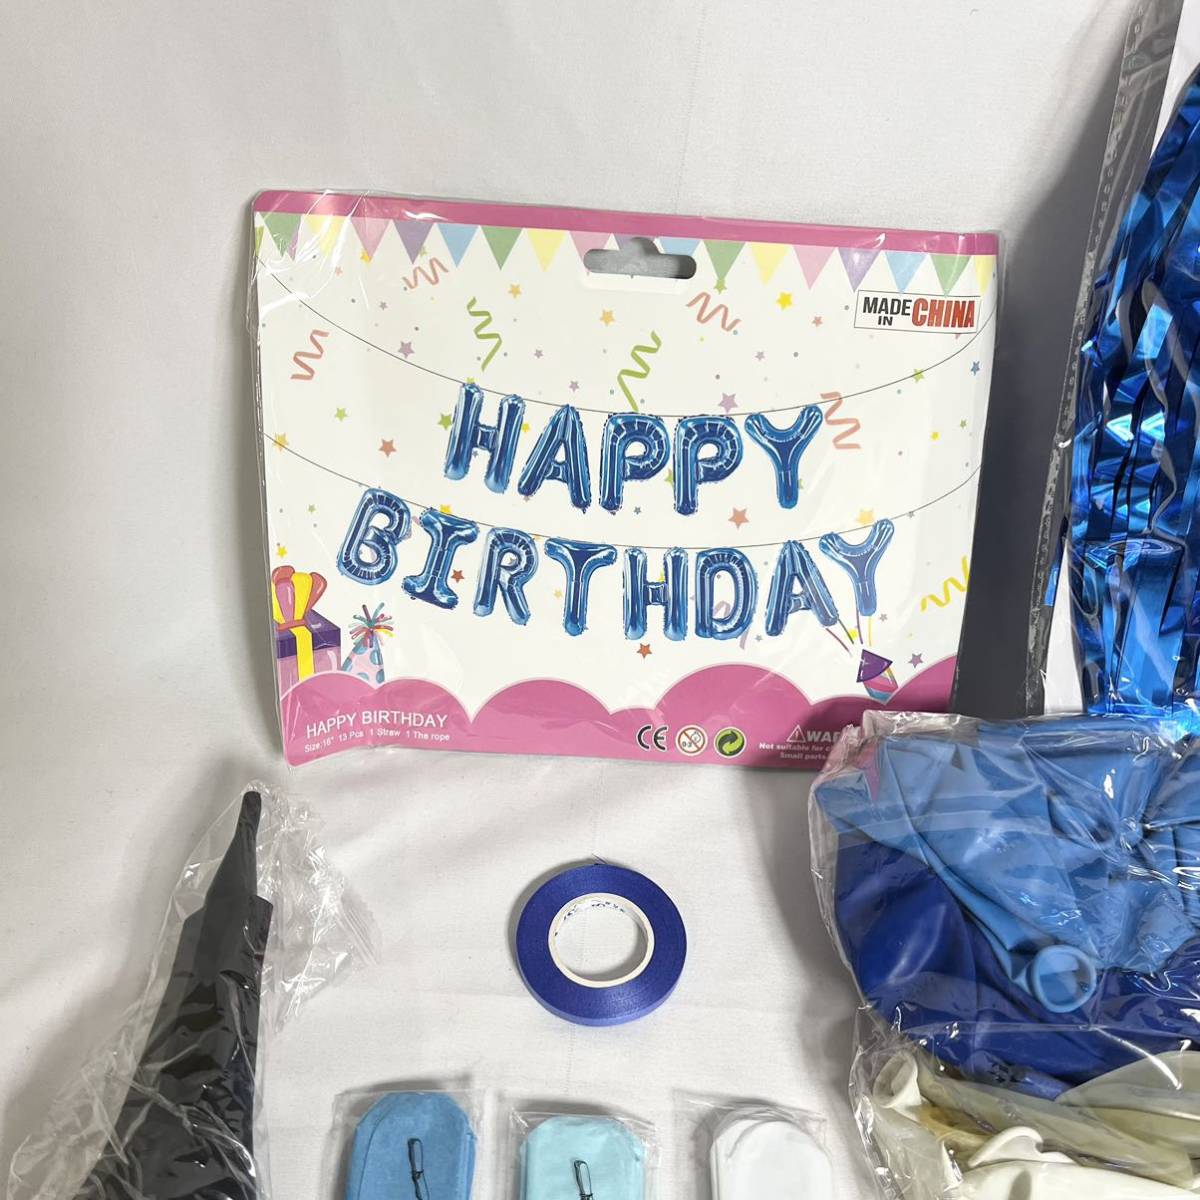  день рождения ba Rune комплект шампанское голубой день рождения украшение установка способ судно синий blue 